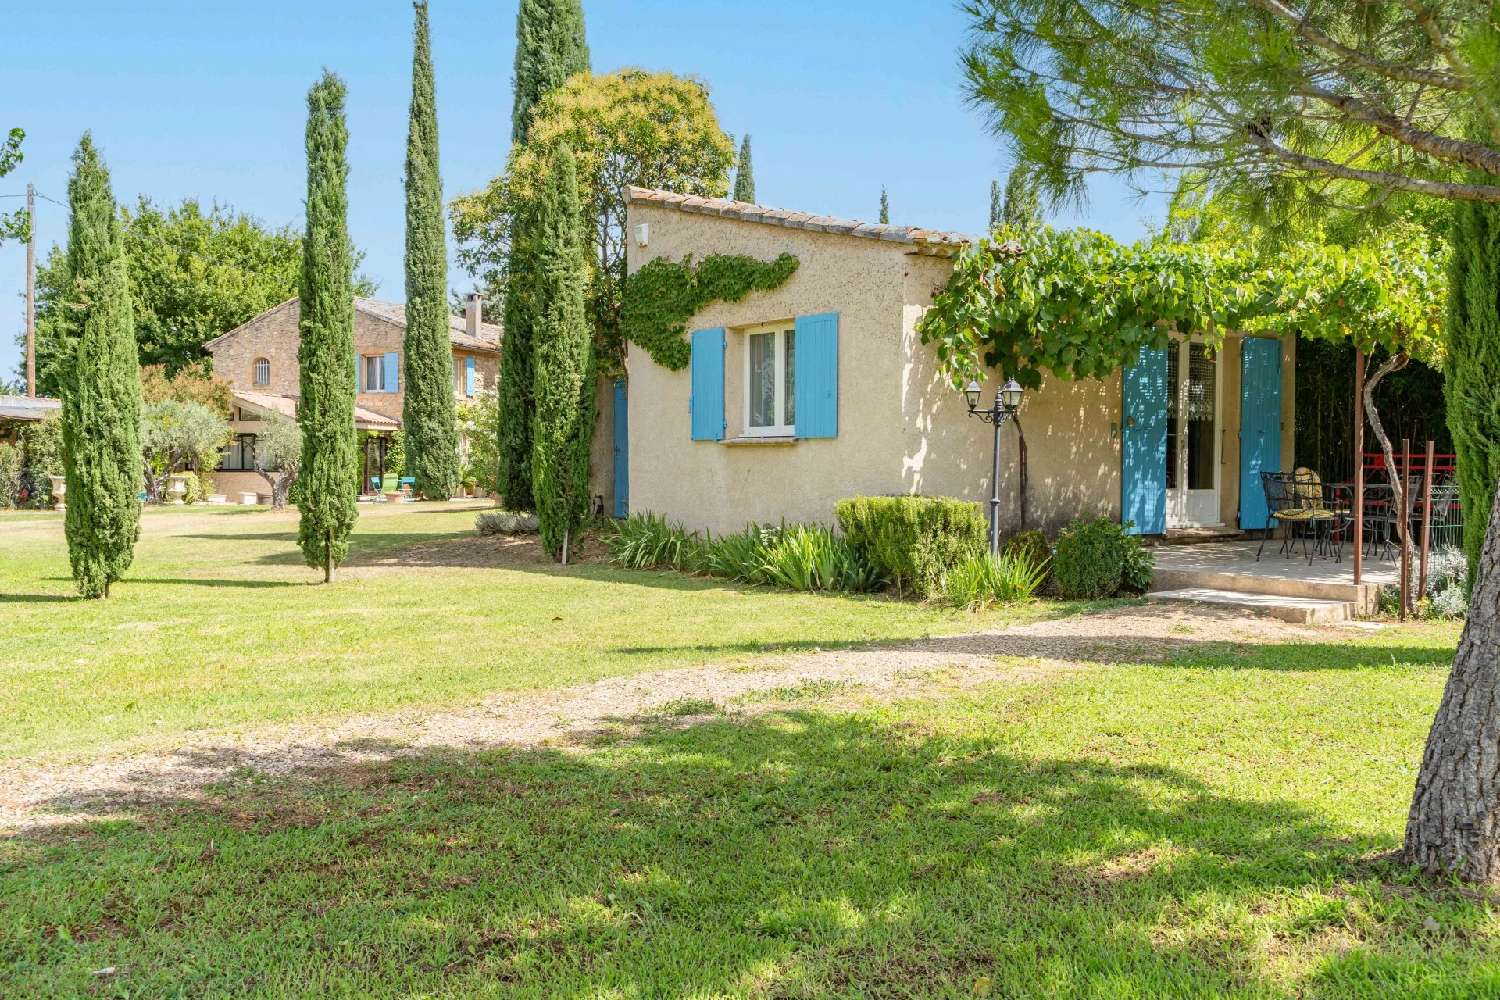  à vendre villa Cavaillon Vaucluse 3